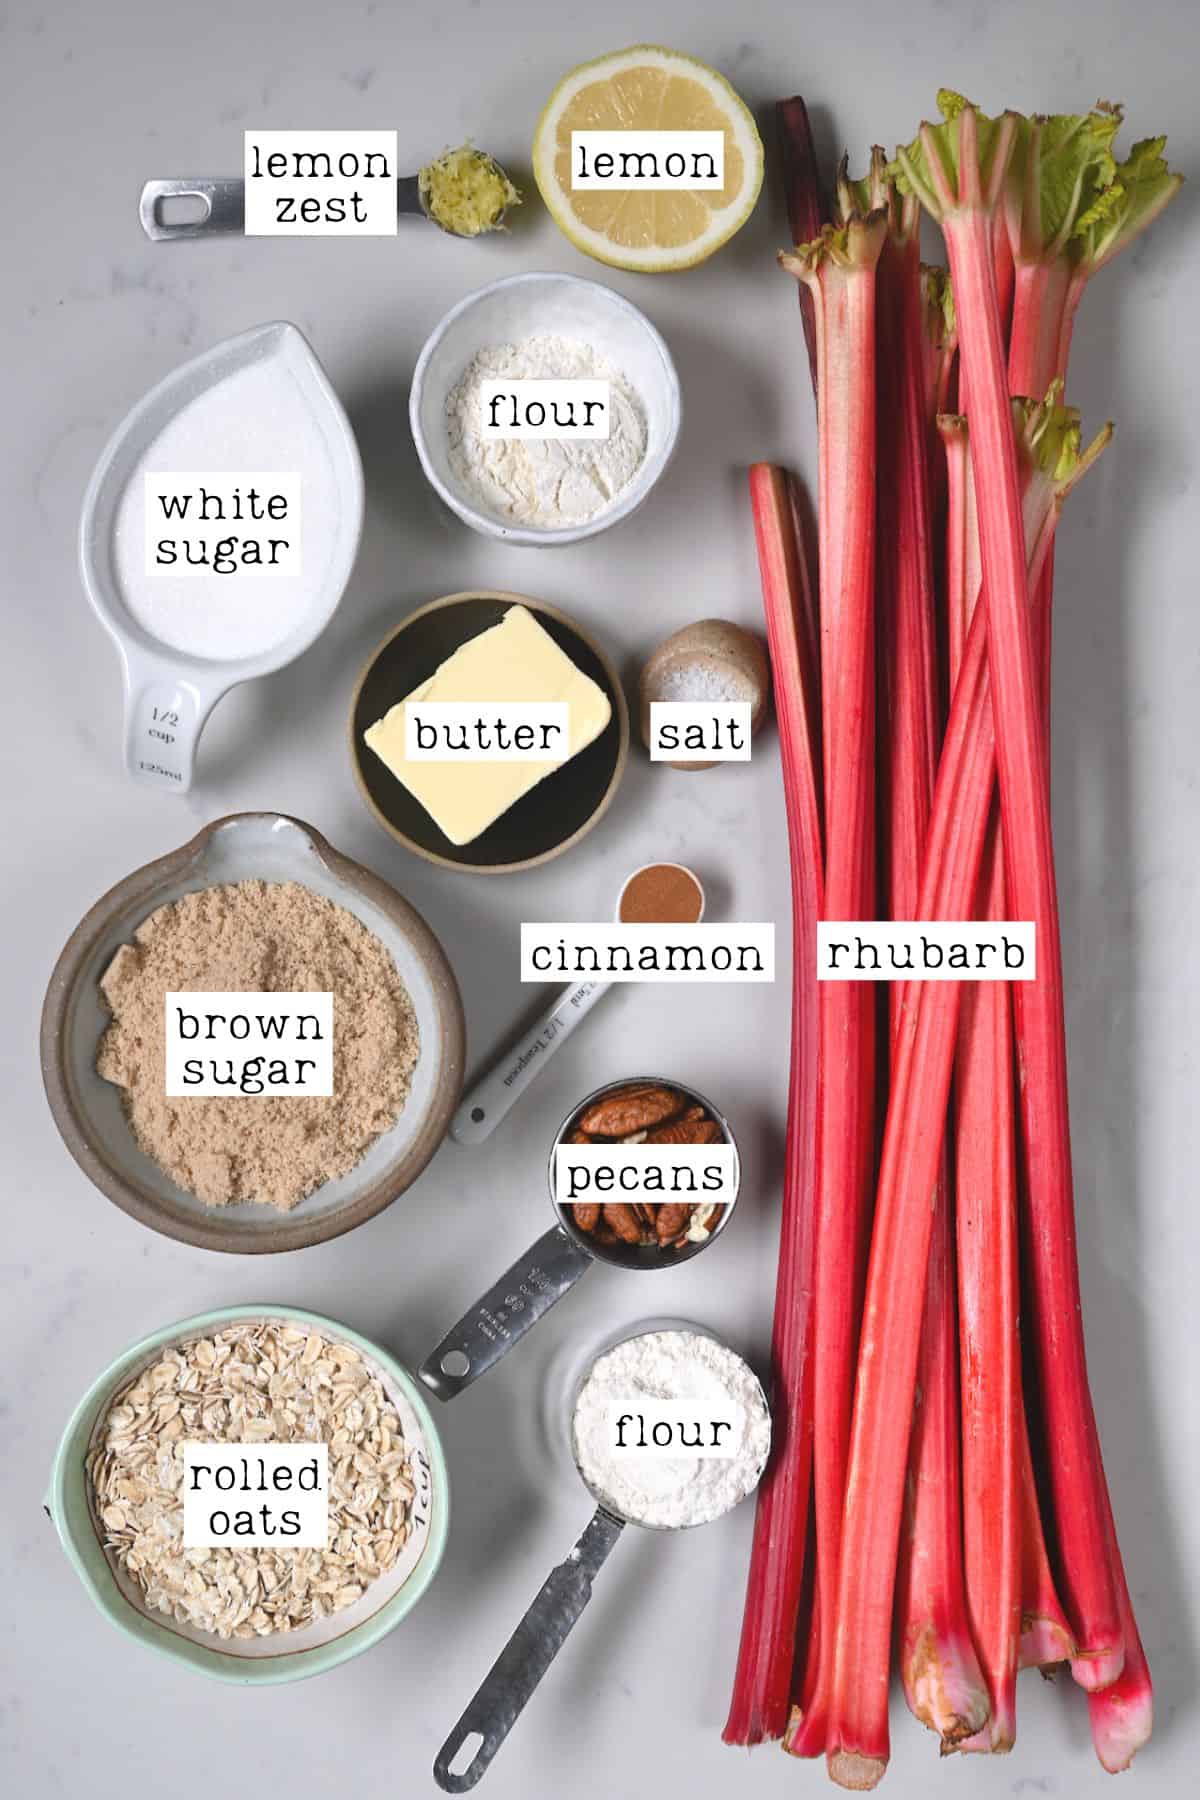 Ingredients for rhubarb crisp